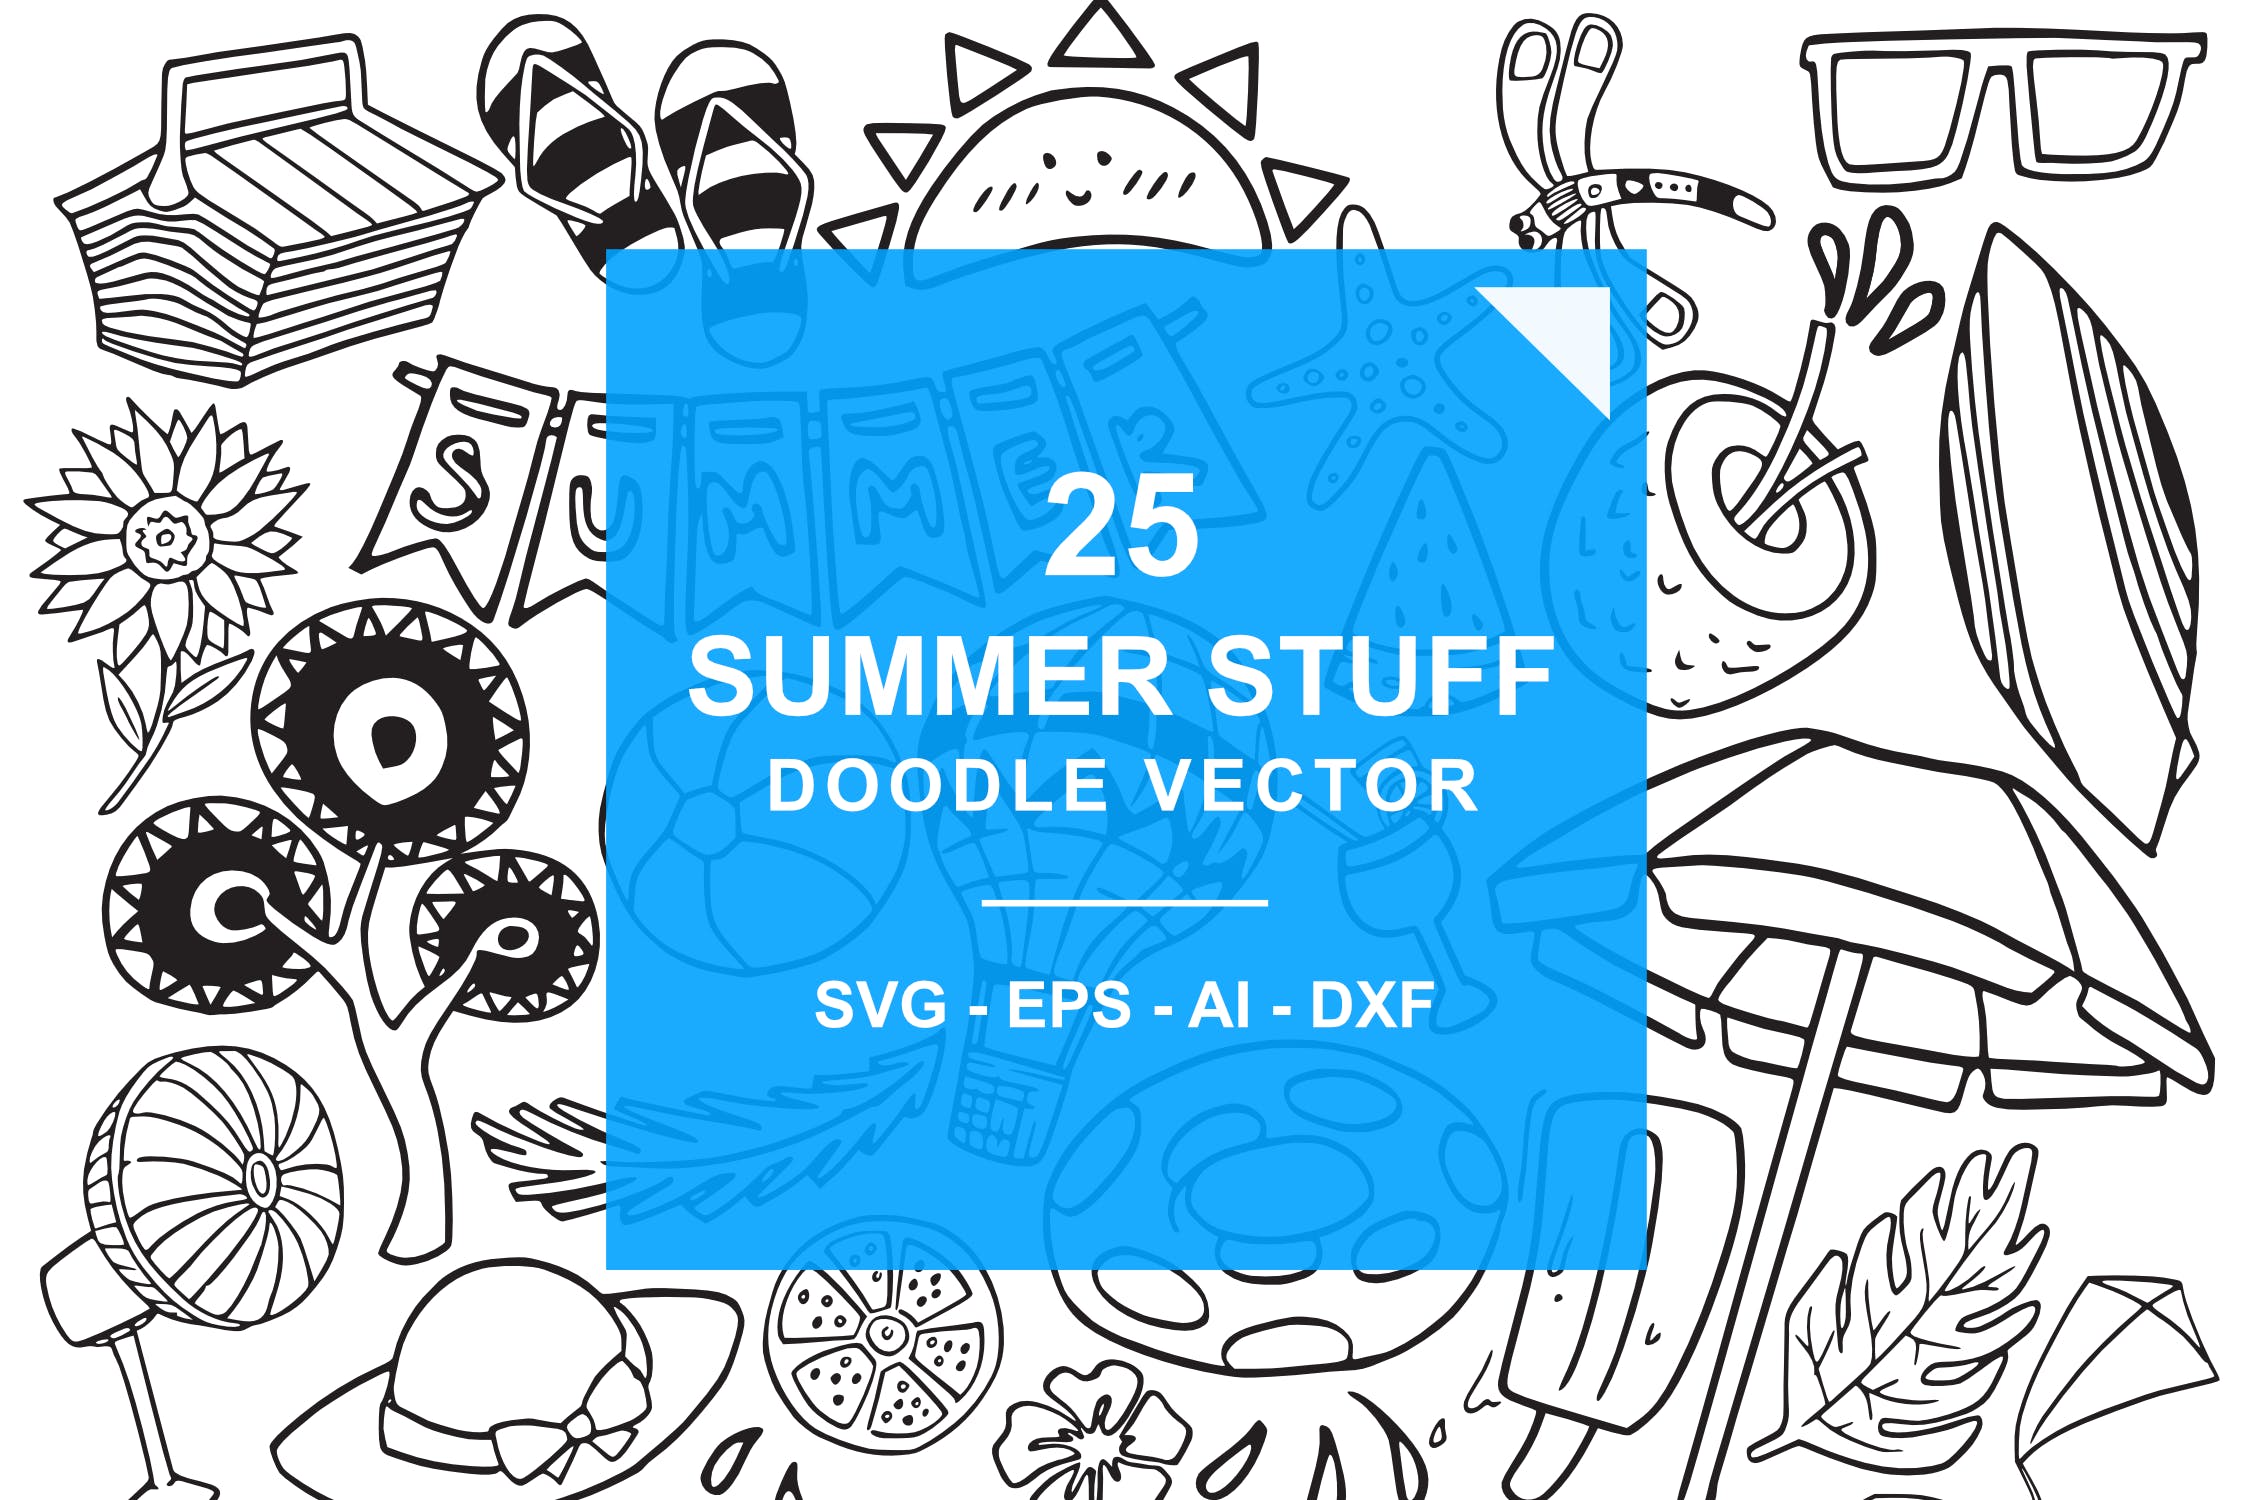 夏季主题涂鸦手绘矢量图案素材 Summer Stuff Doodle Vector插图